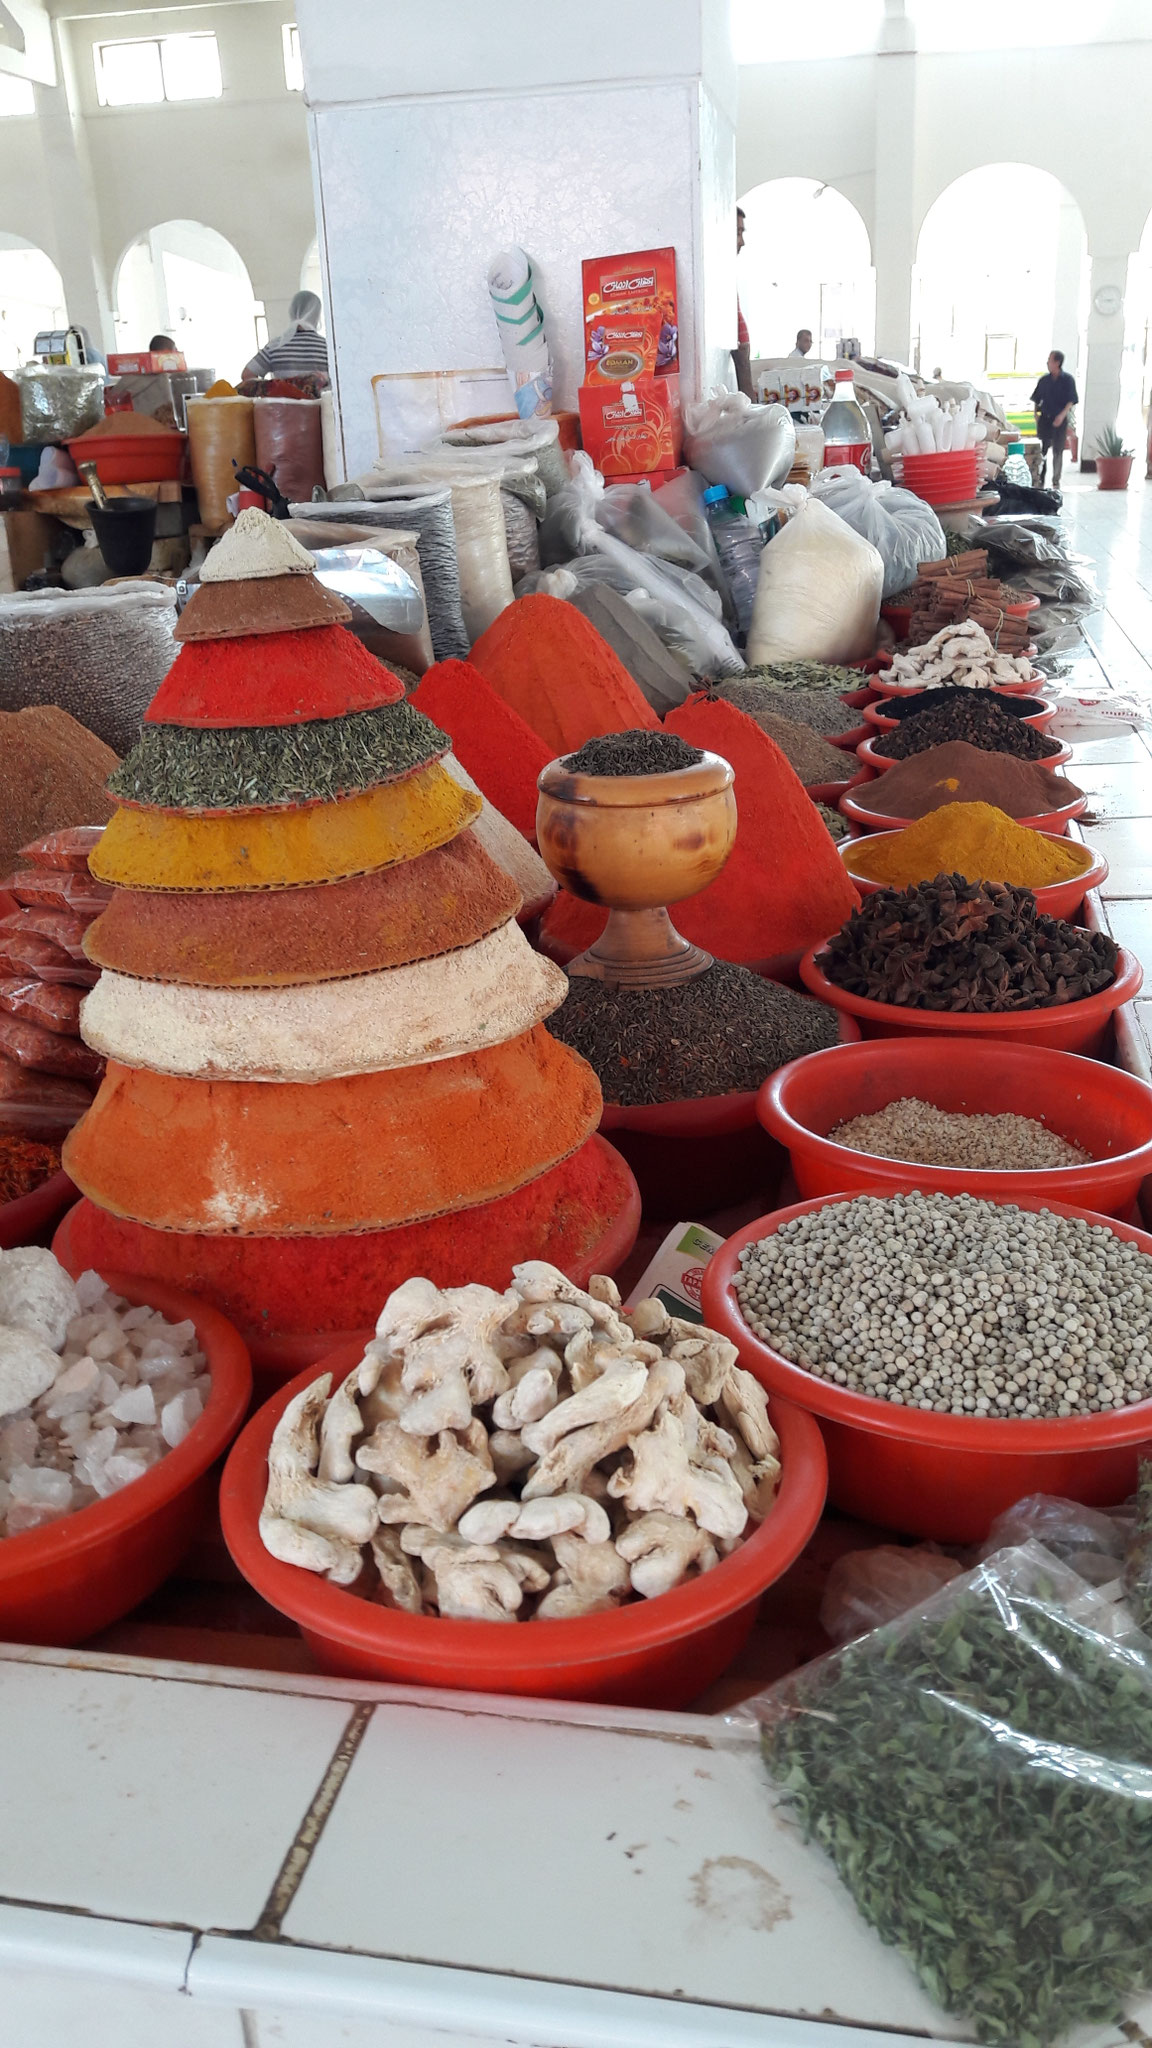 Wiedermal farbenfroher Bazar